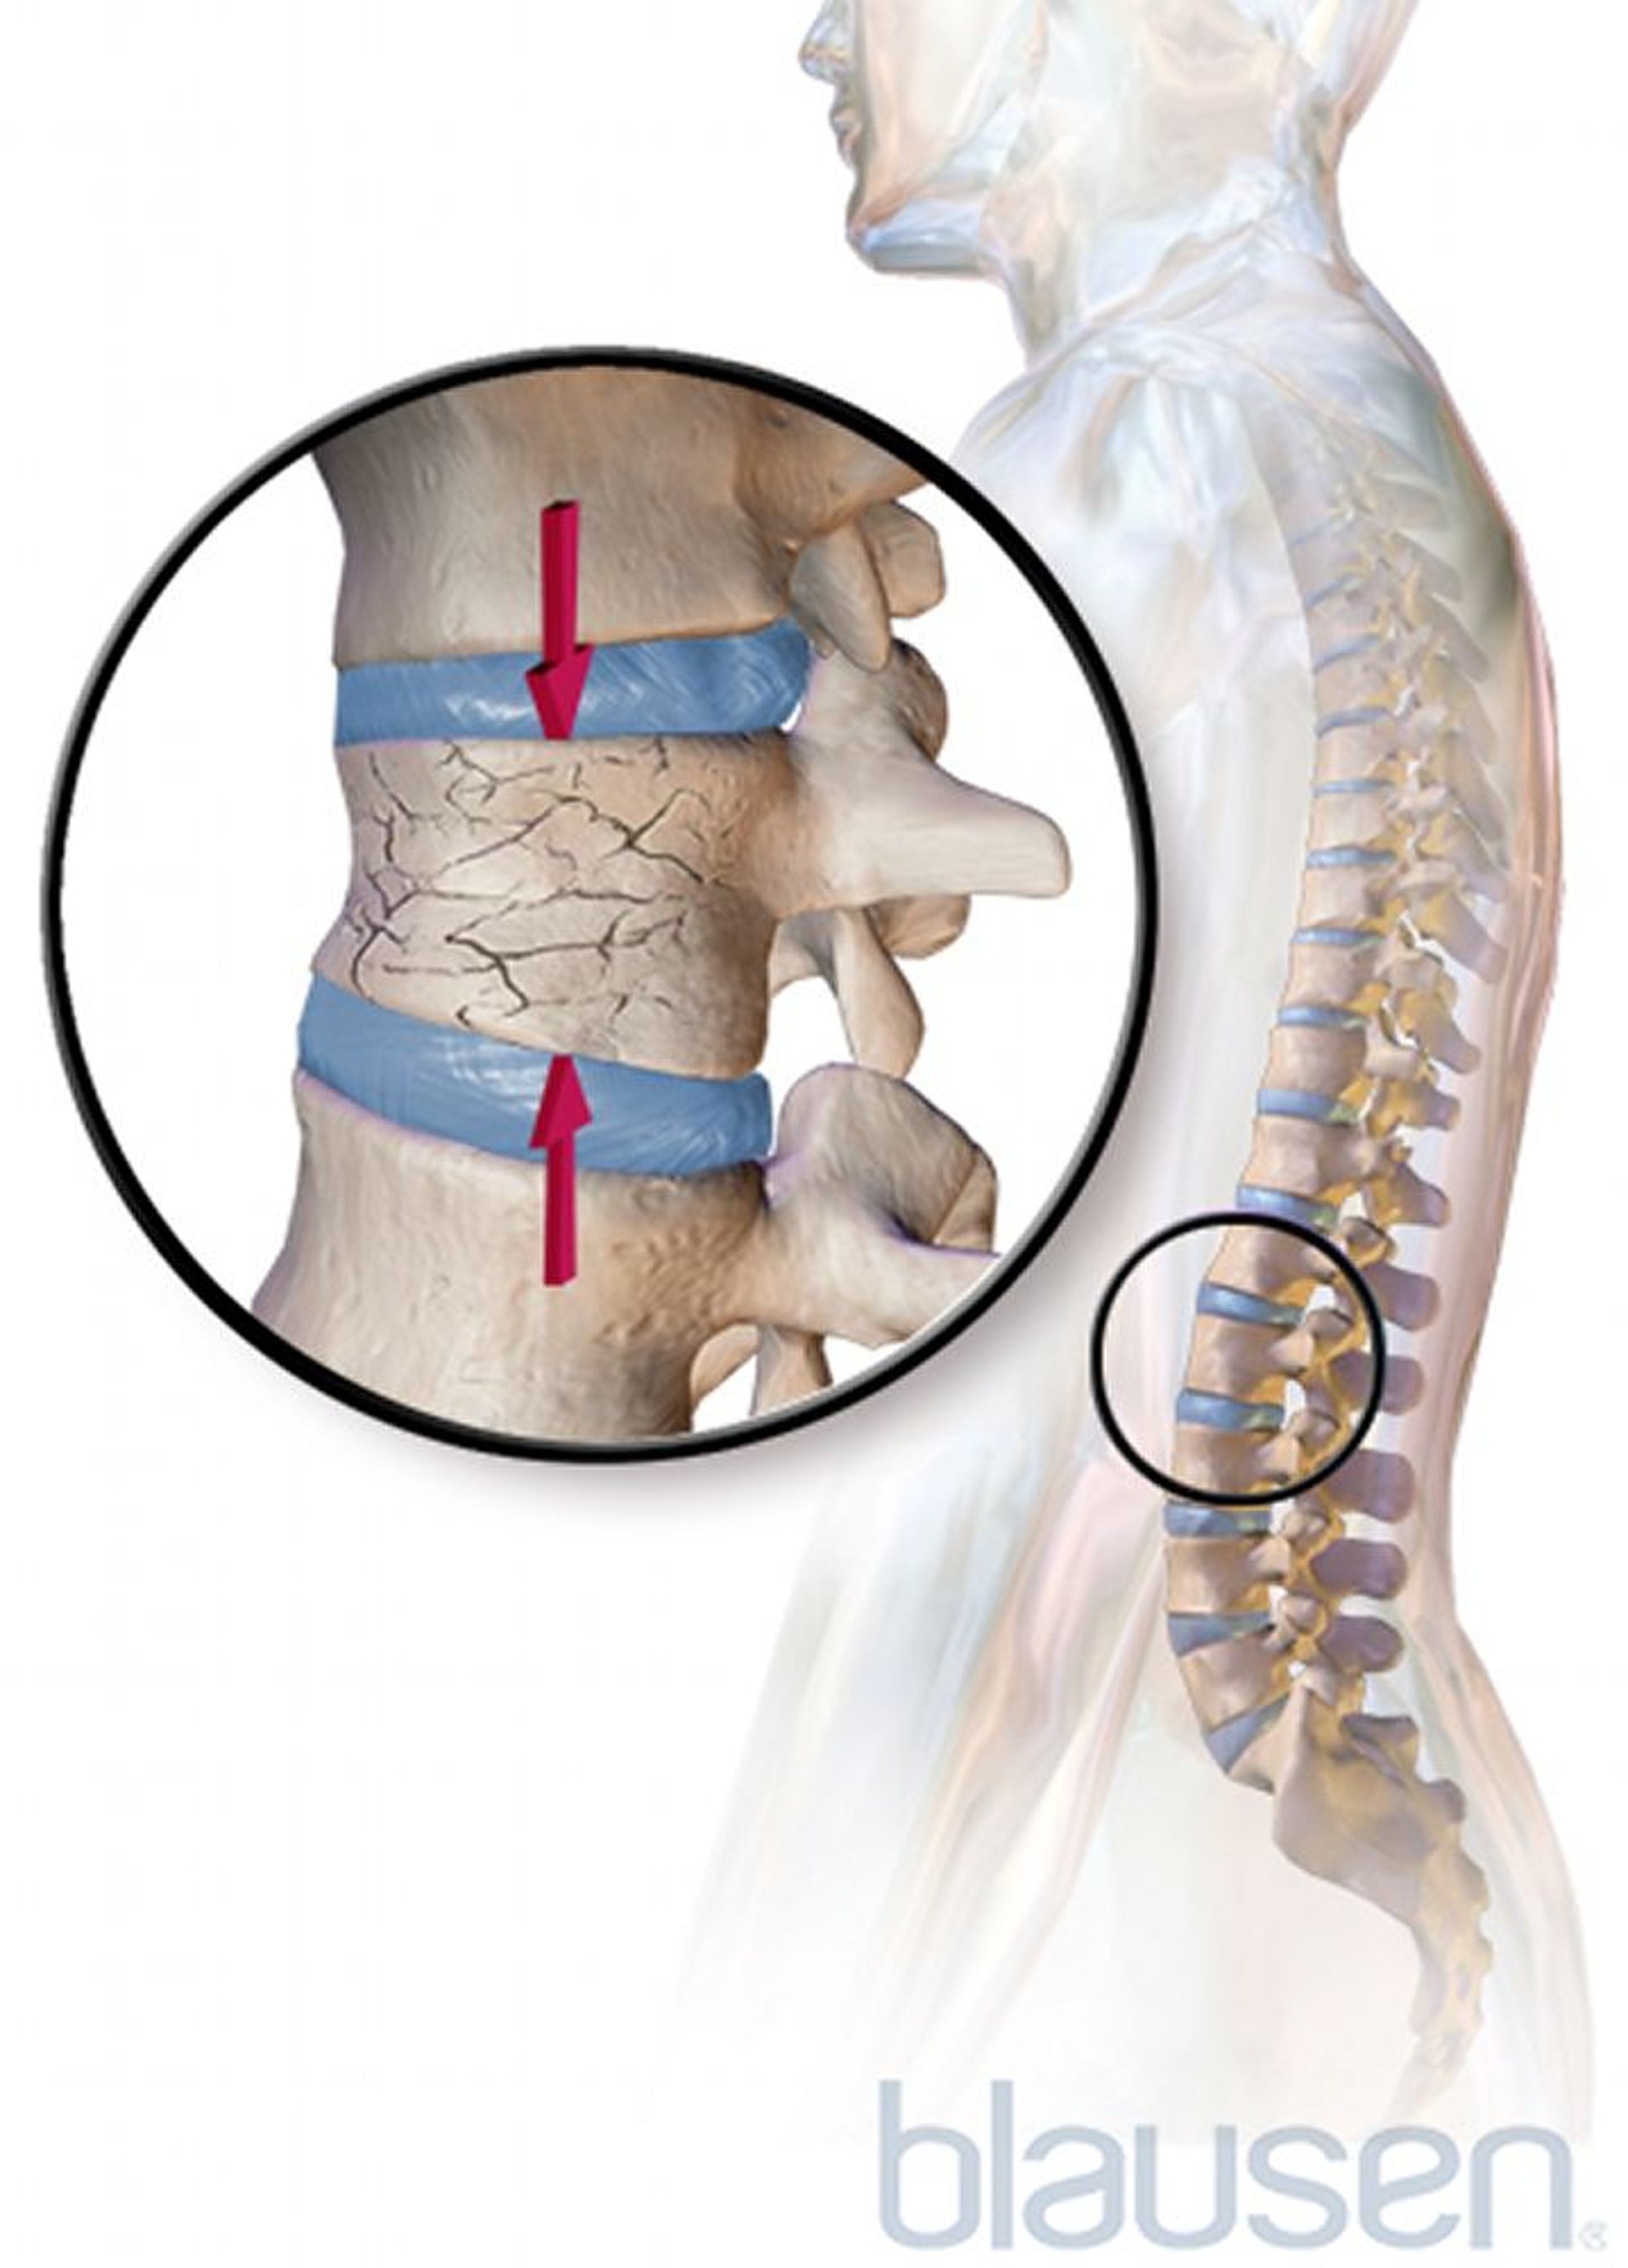 Fracture vertébrale par compression causée par l’ostéoporose